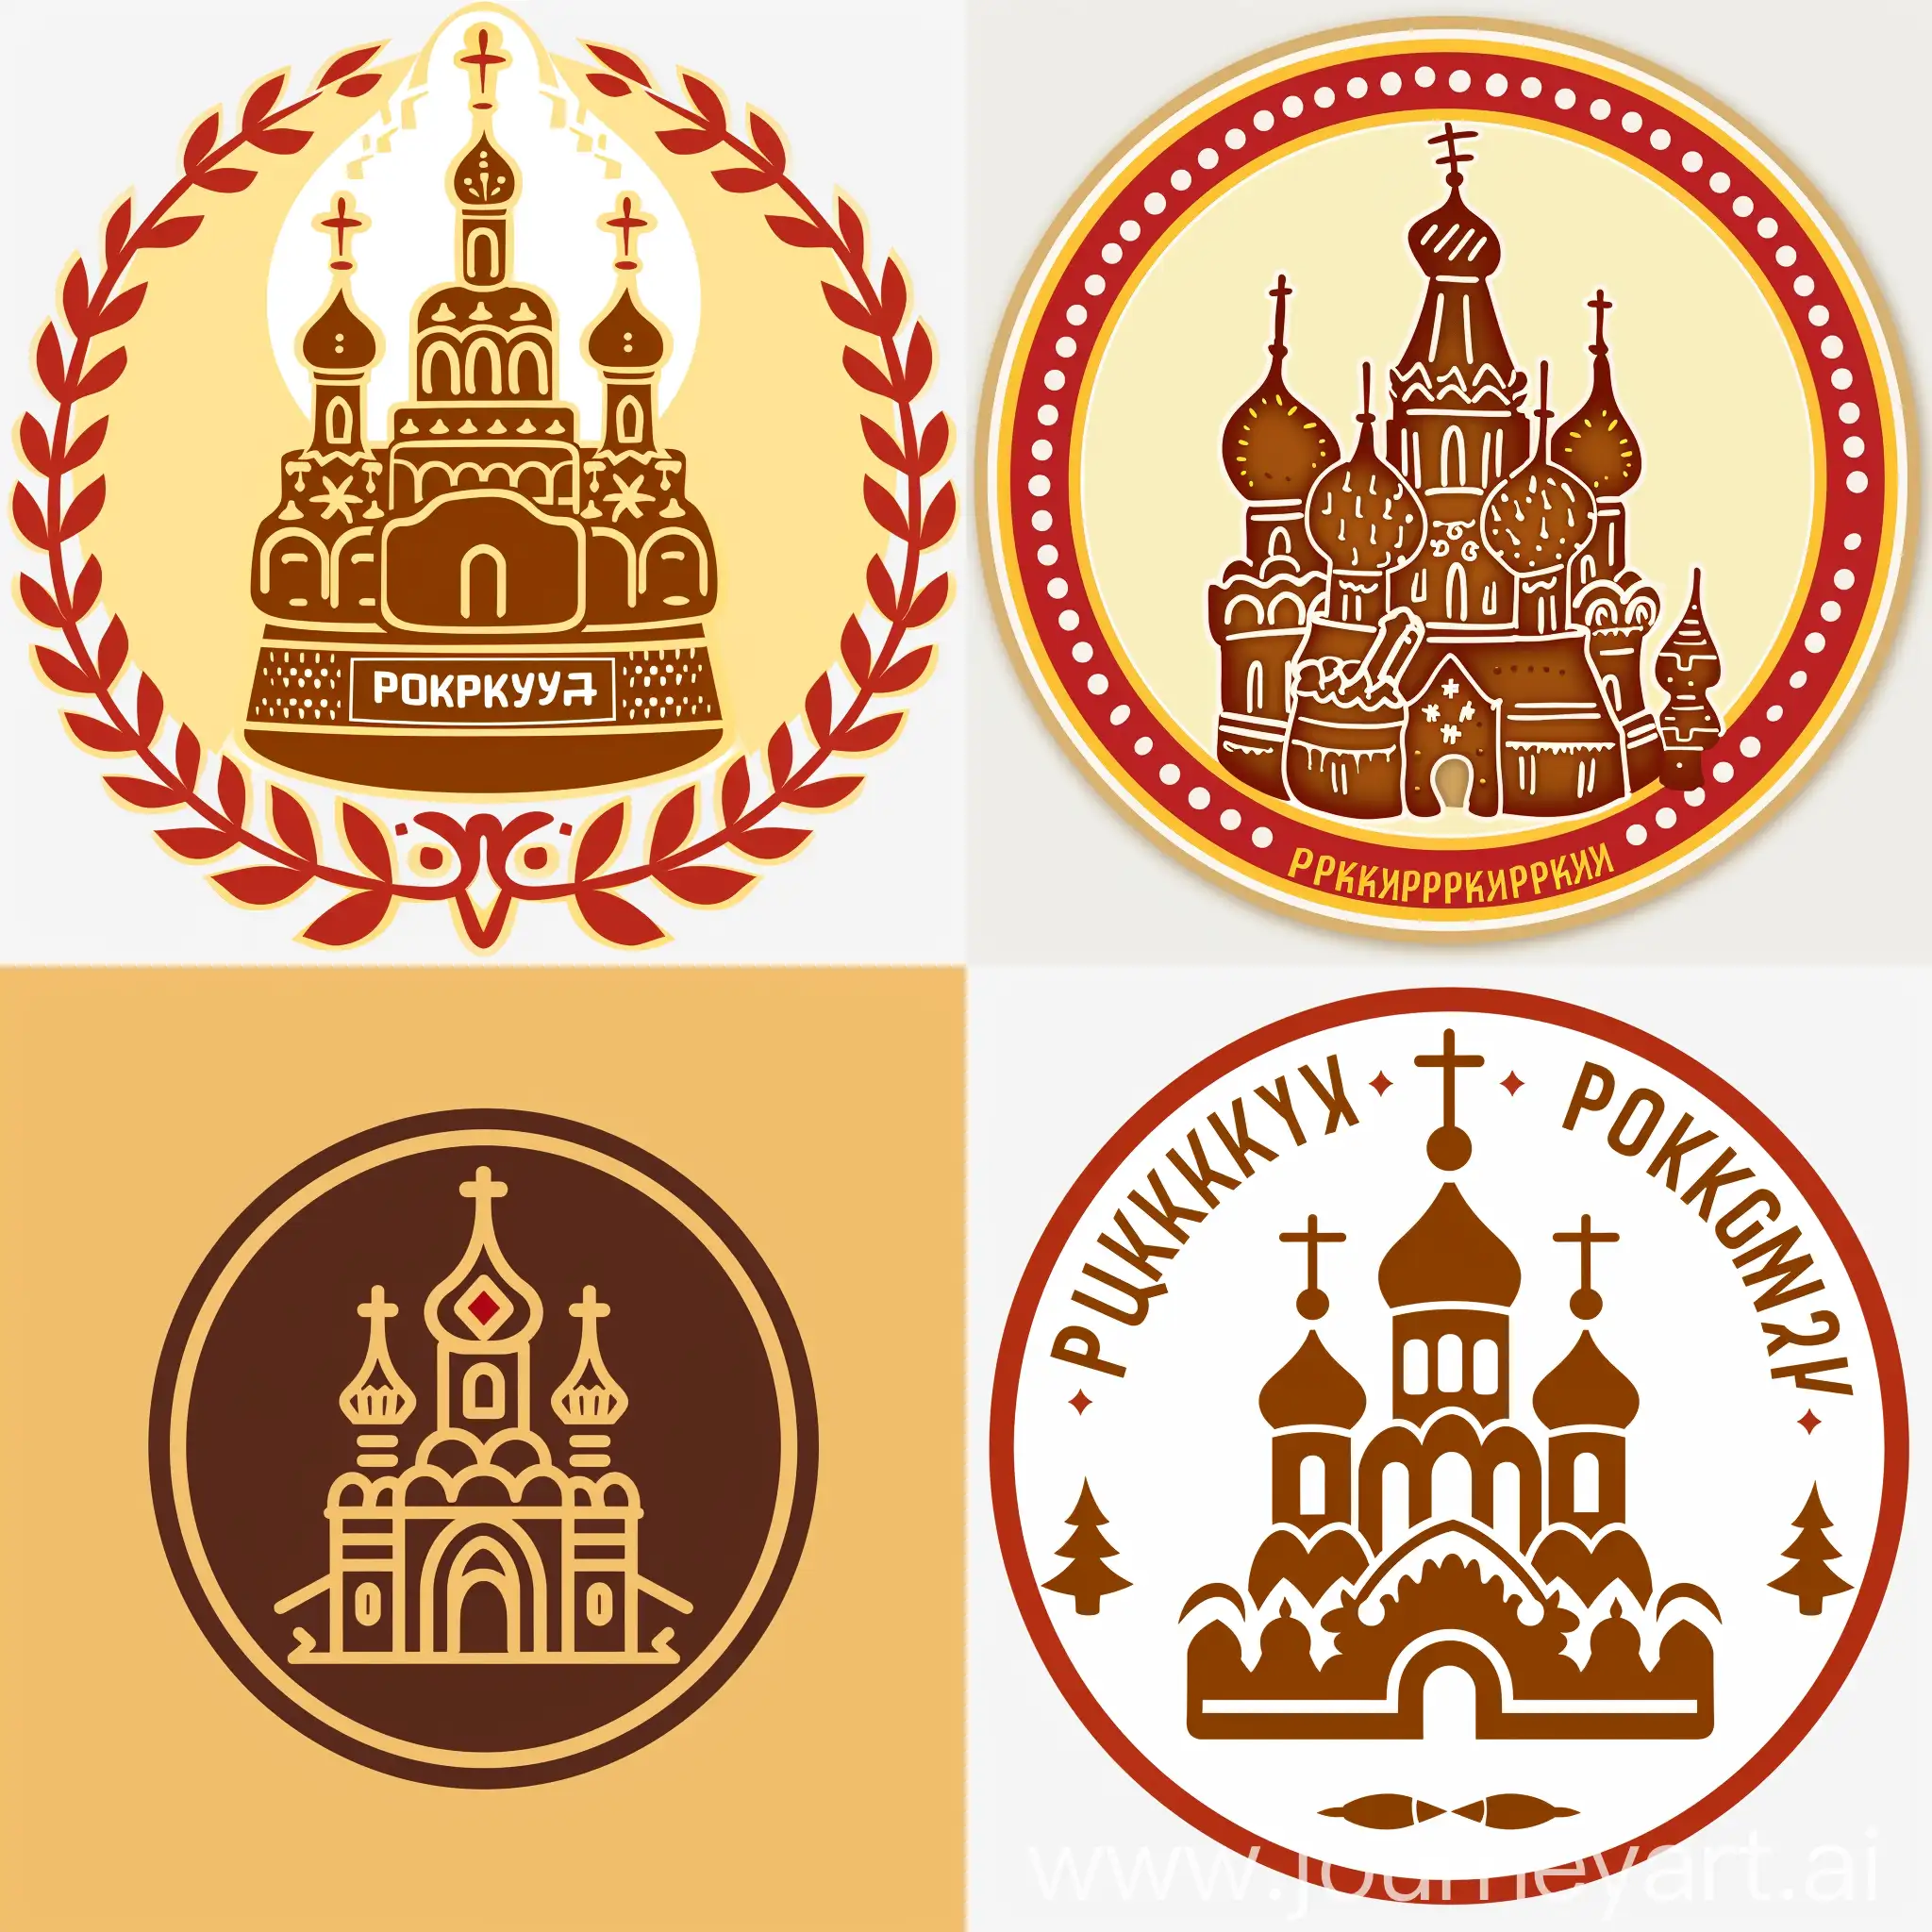 сделай похожий логотип музея покровского покровского пряника